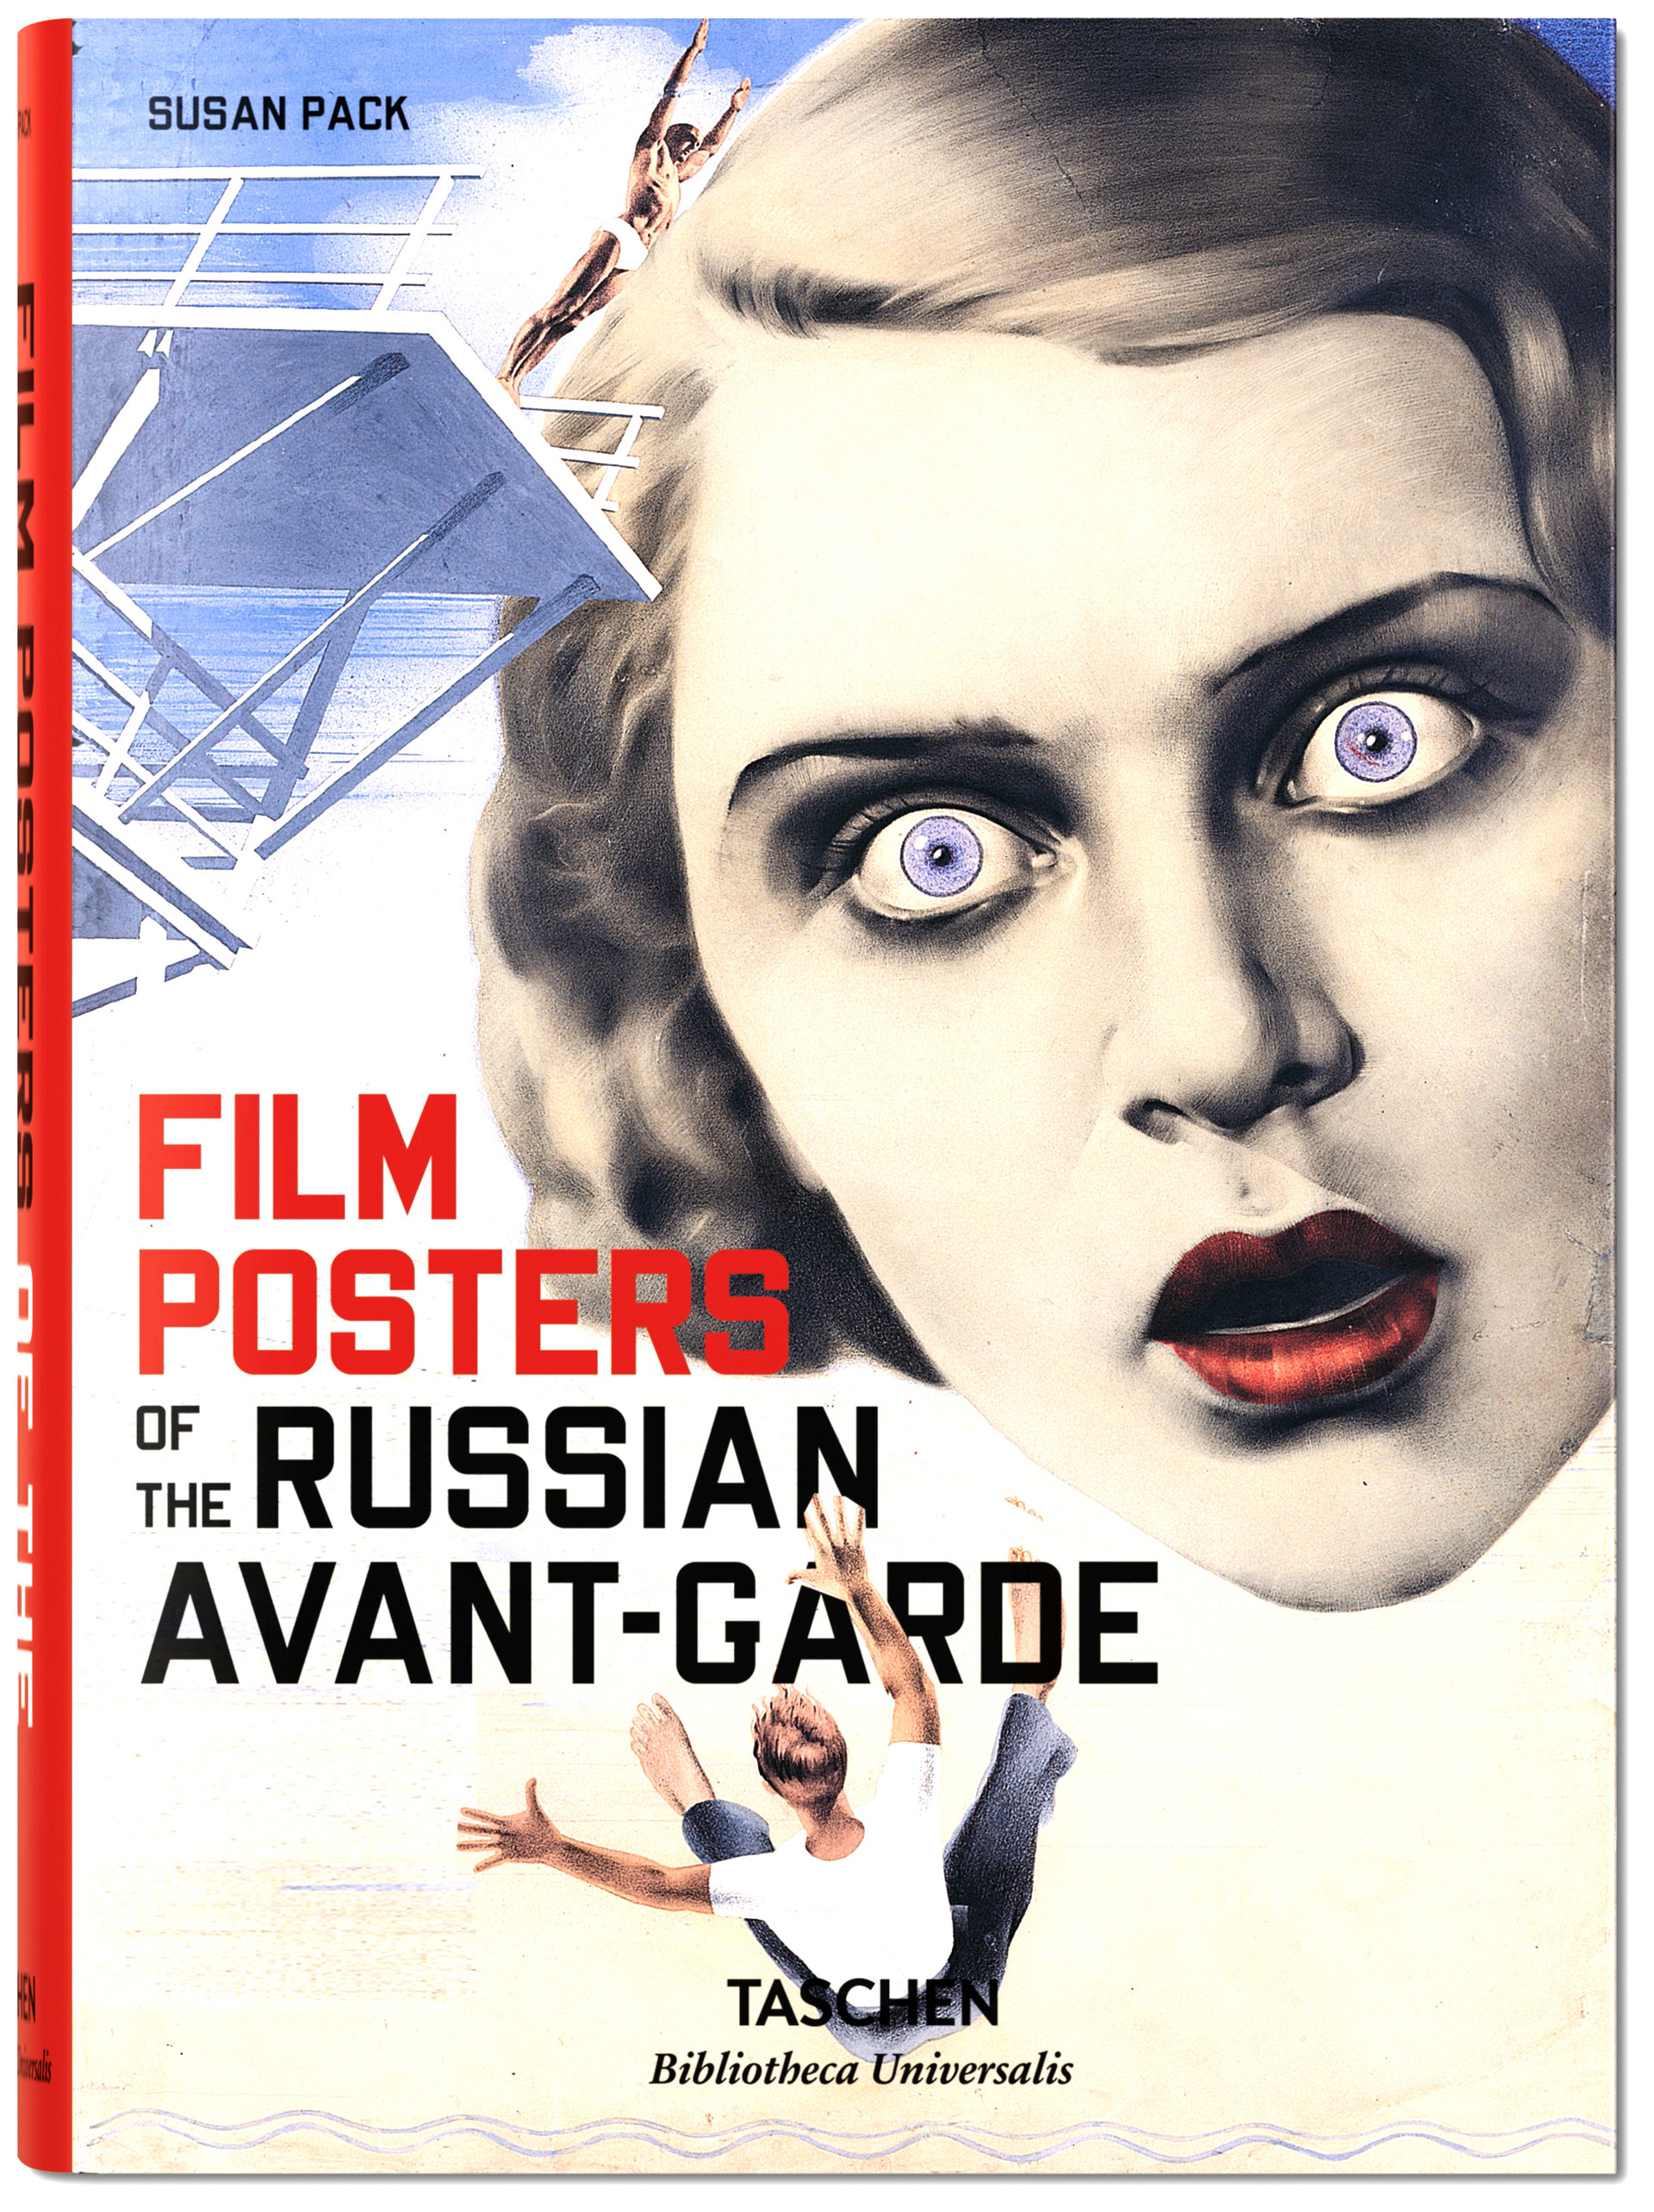 Copertina del libro, poster cinematografico